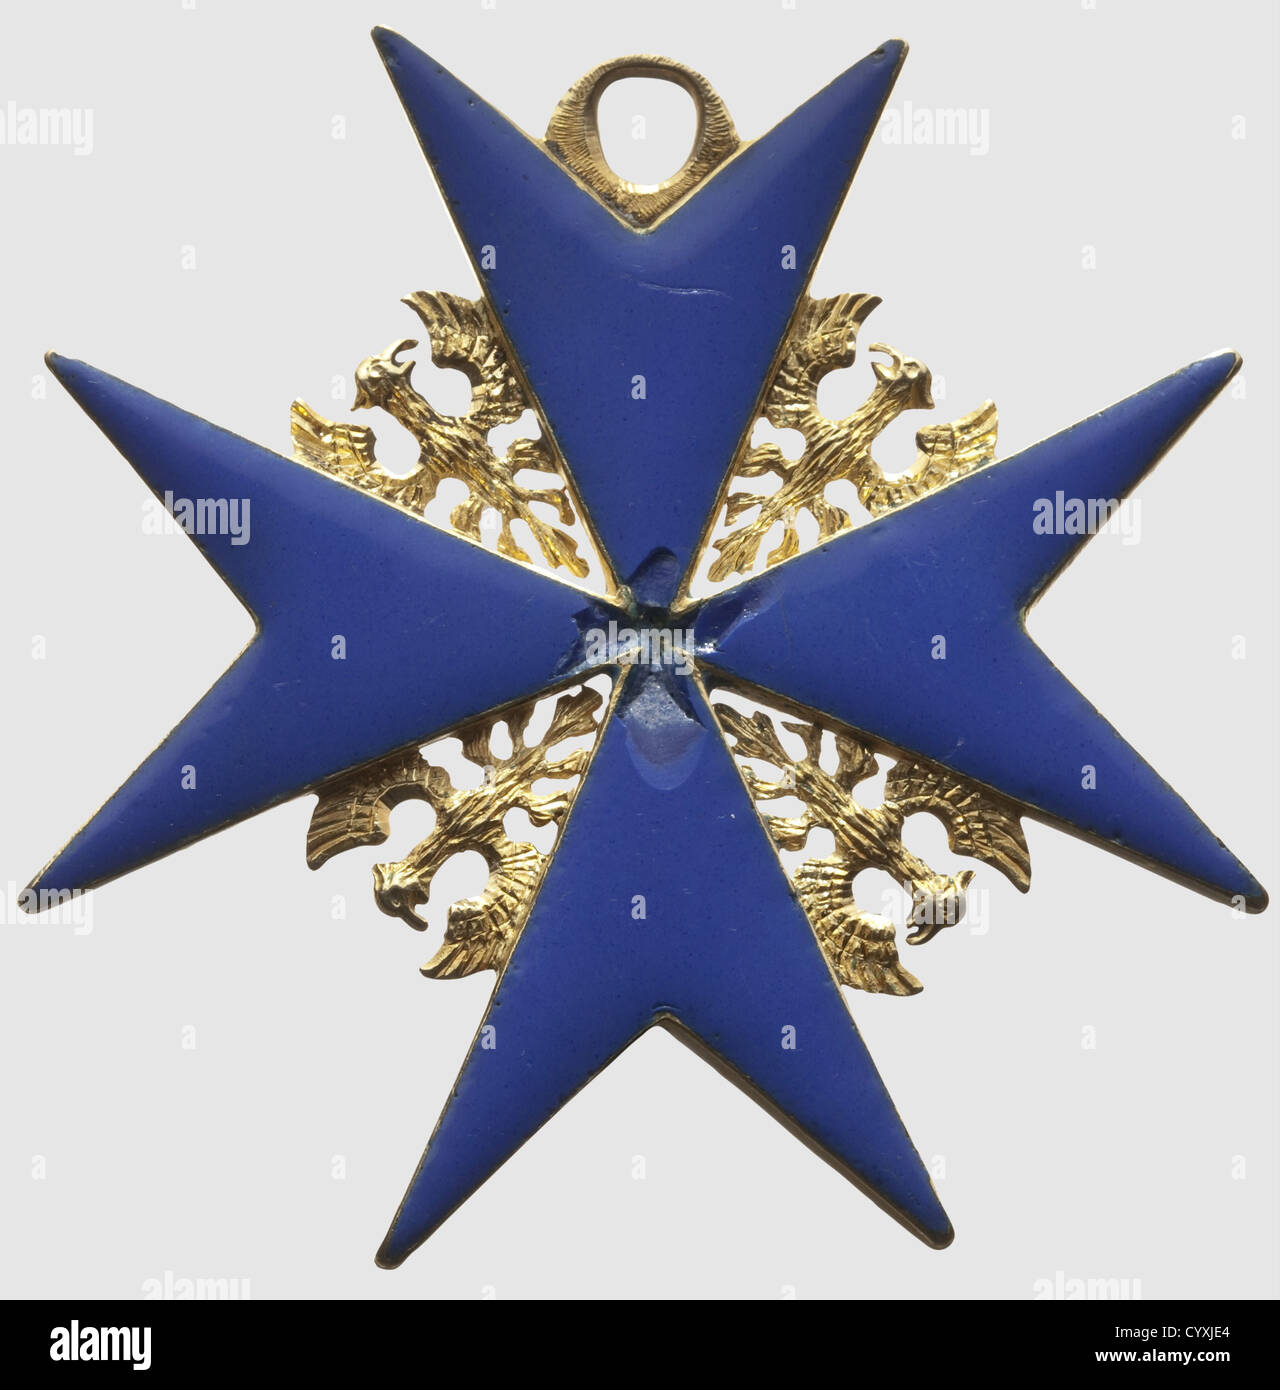 Un ordine pour le Mérite,ordine croce dal tardo 18 ° secolo fatto di oro  con smalto blu,l'iscrizione fatta di lamina d'oro liscio con ombreggiatura  nera,le perle della corona dipinta in smalto bianco,aquila